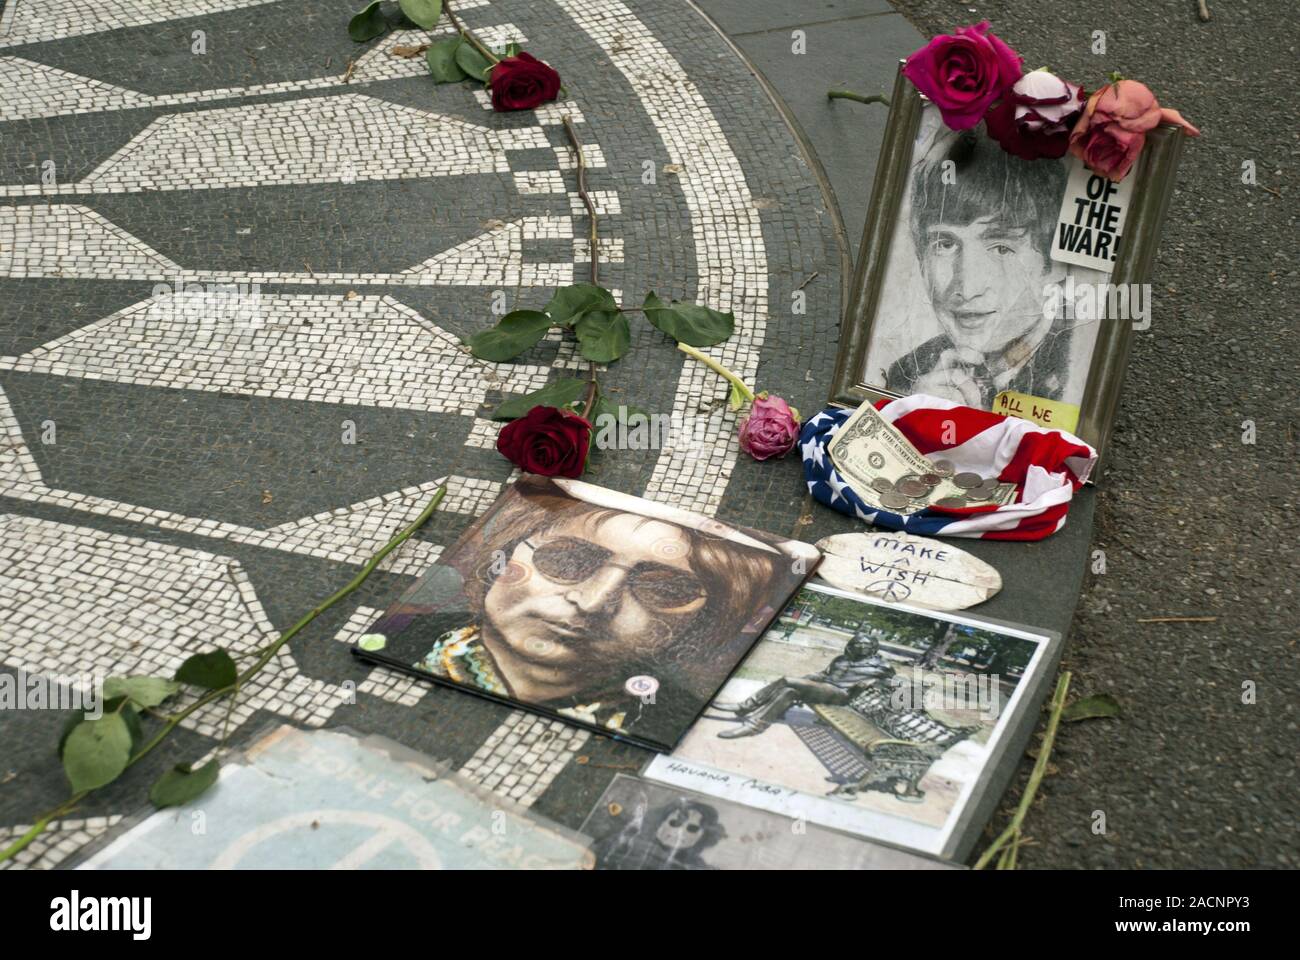 Décorées mémorial à John Lennon, Strawberry Fields, Central Park, Manhattan, New York City, USA, Amérique du Nord, Amérique Banque D'Images